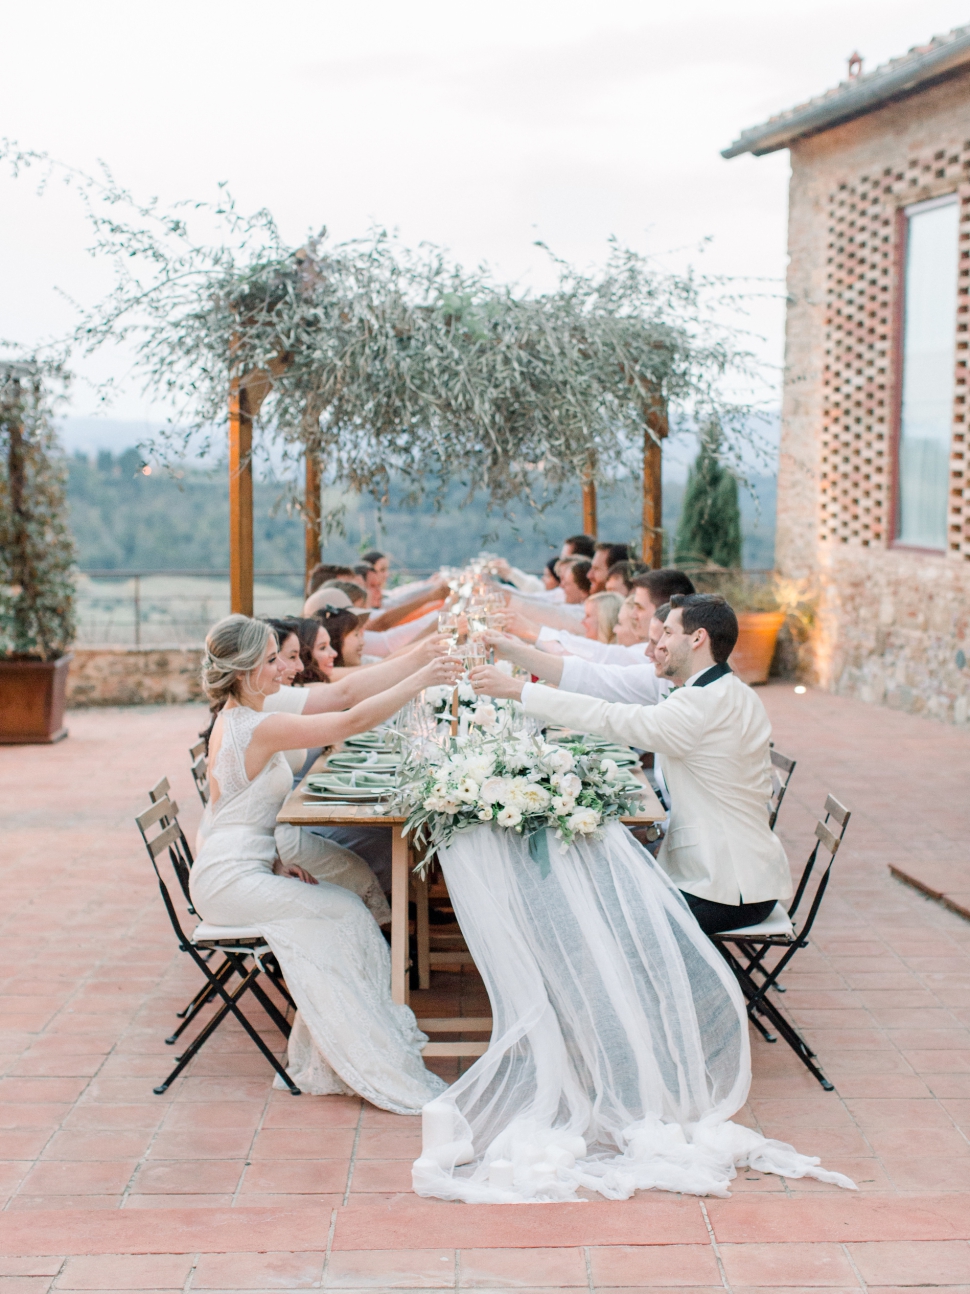 Tuscany-Destination-Wedding-Photographer-Cassi-Claire-Borgo-Petrognano-Florence-Wedding-32.jpg